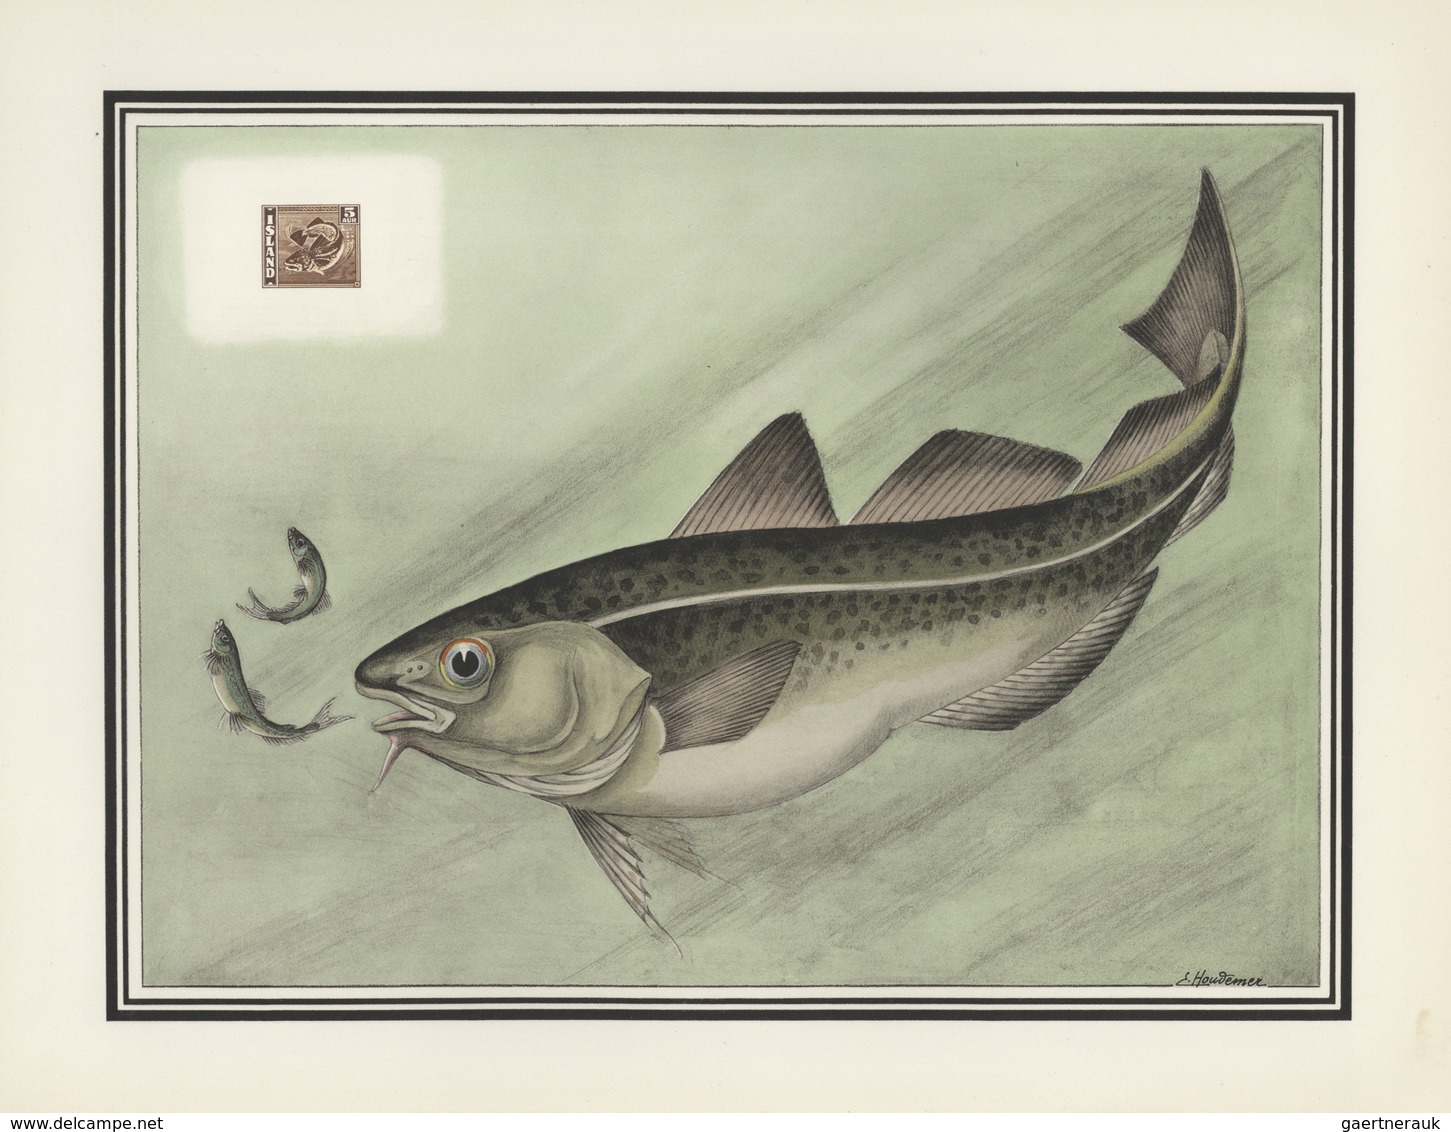 25698 Thematik: Tiere-Fische / animals-fishes: 1955, France. "LES OISEAUX et le Timbre-Poste par F.-E. Hou